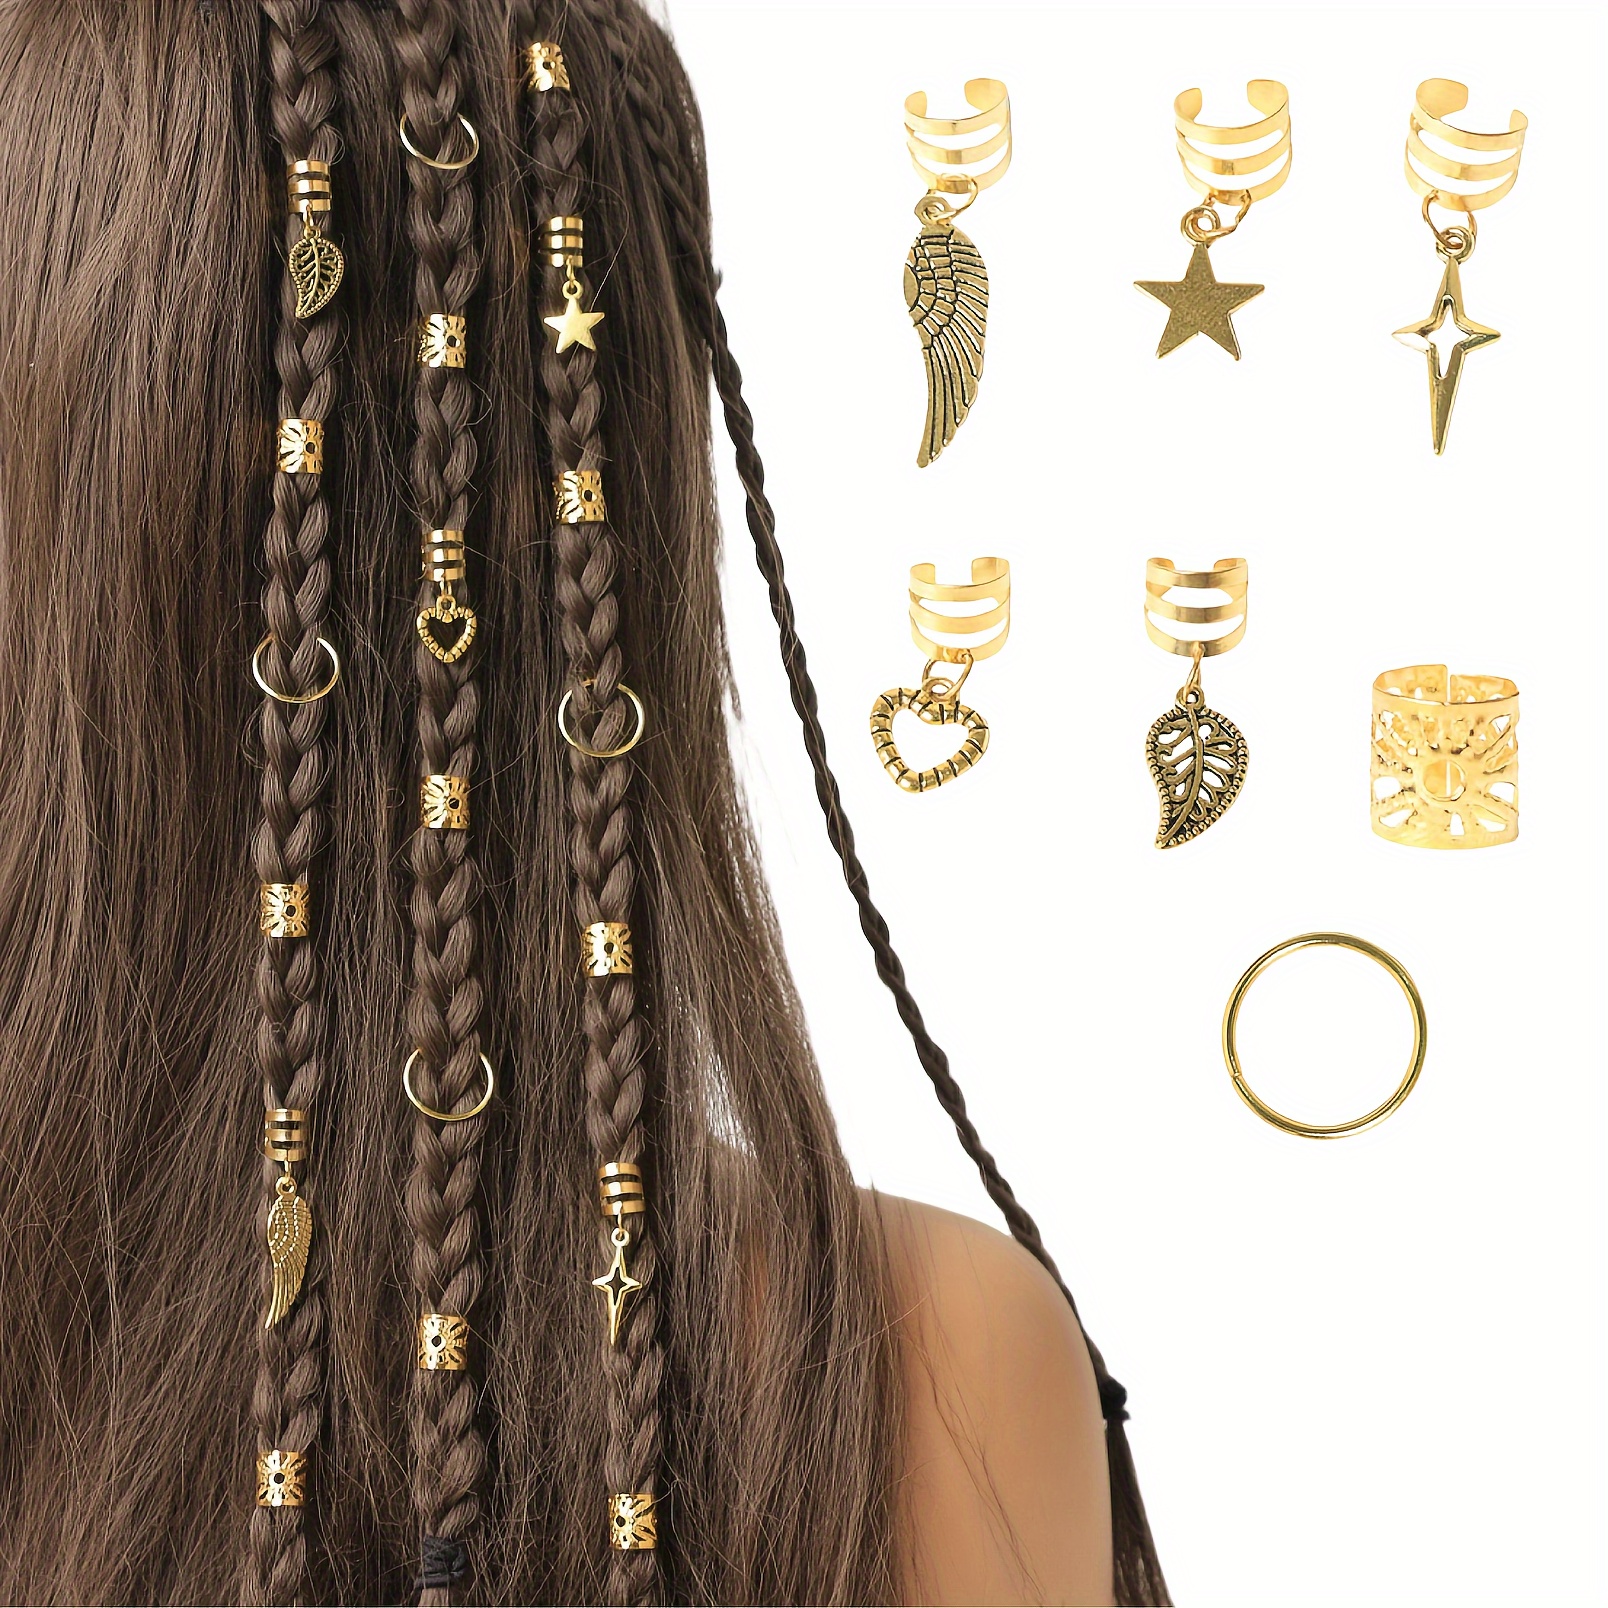 

45pcs Alloy Braid Hair Ring Dreadlock, Hip Hop Style Girls Hair Accessories, For Braids